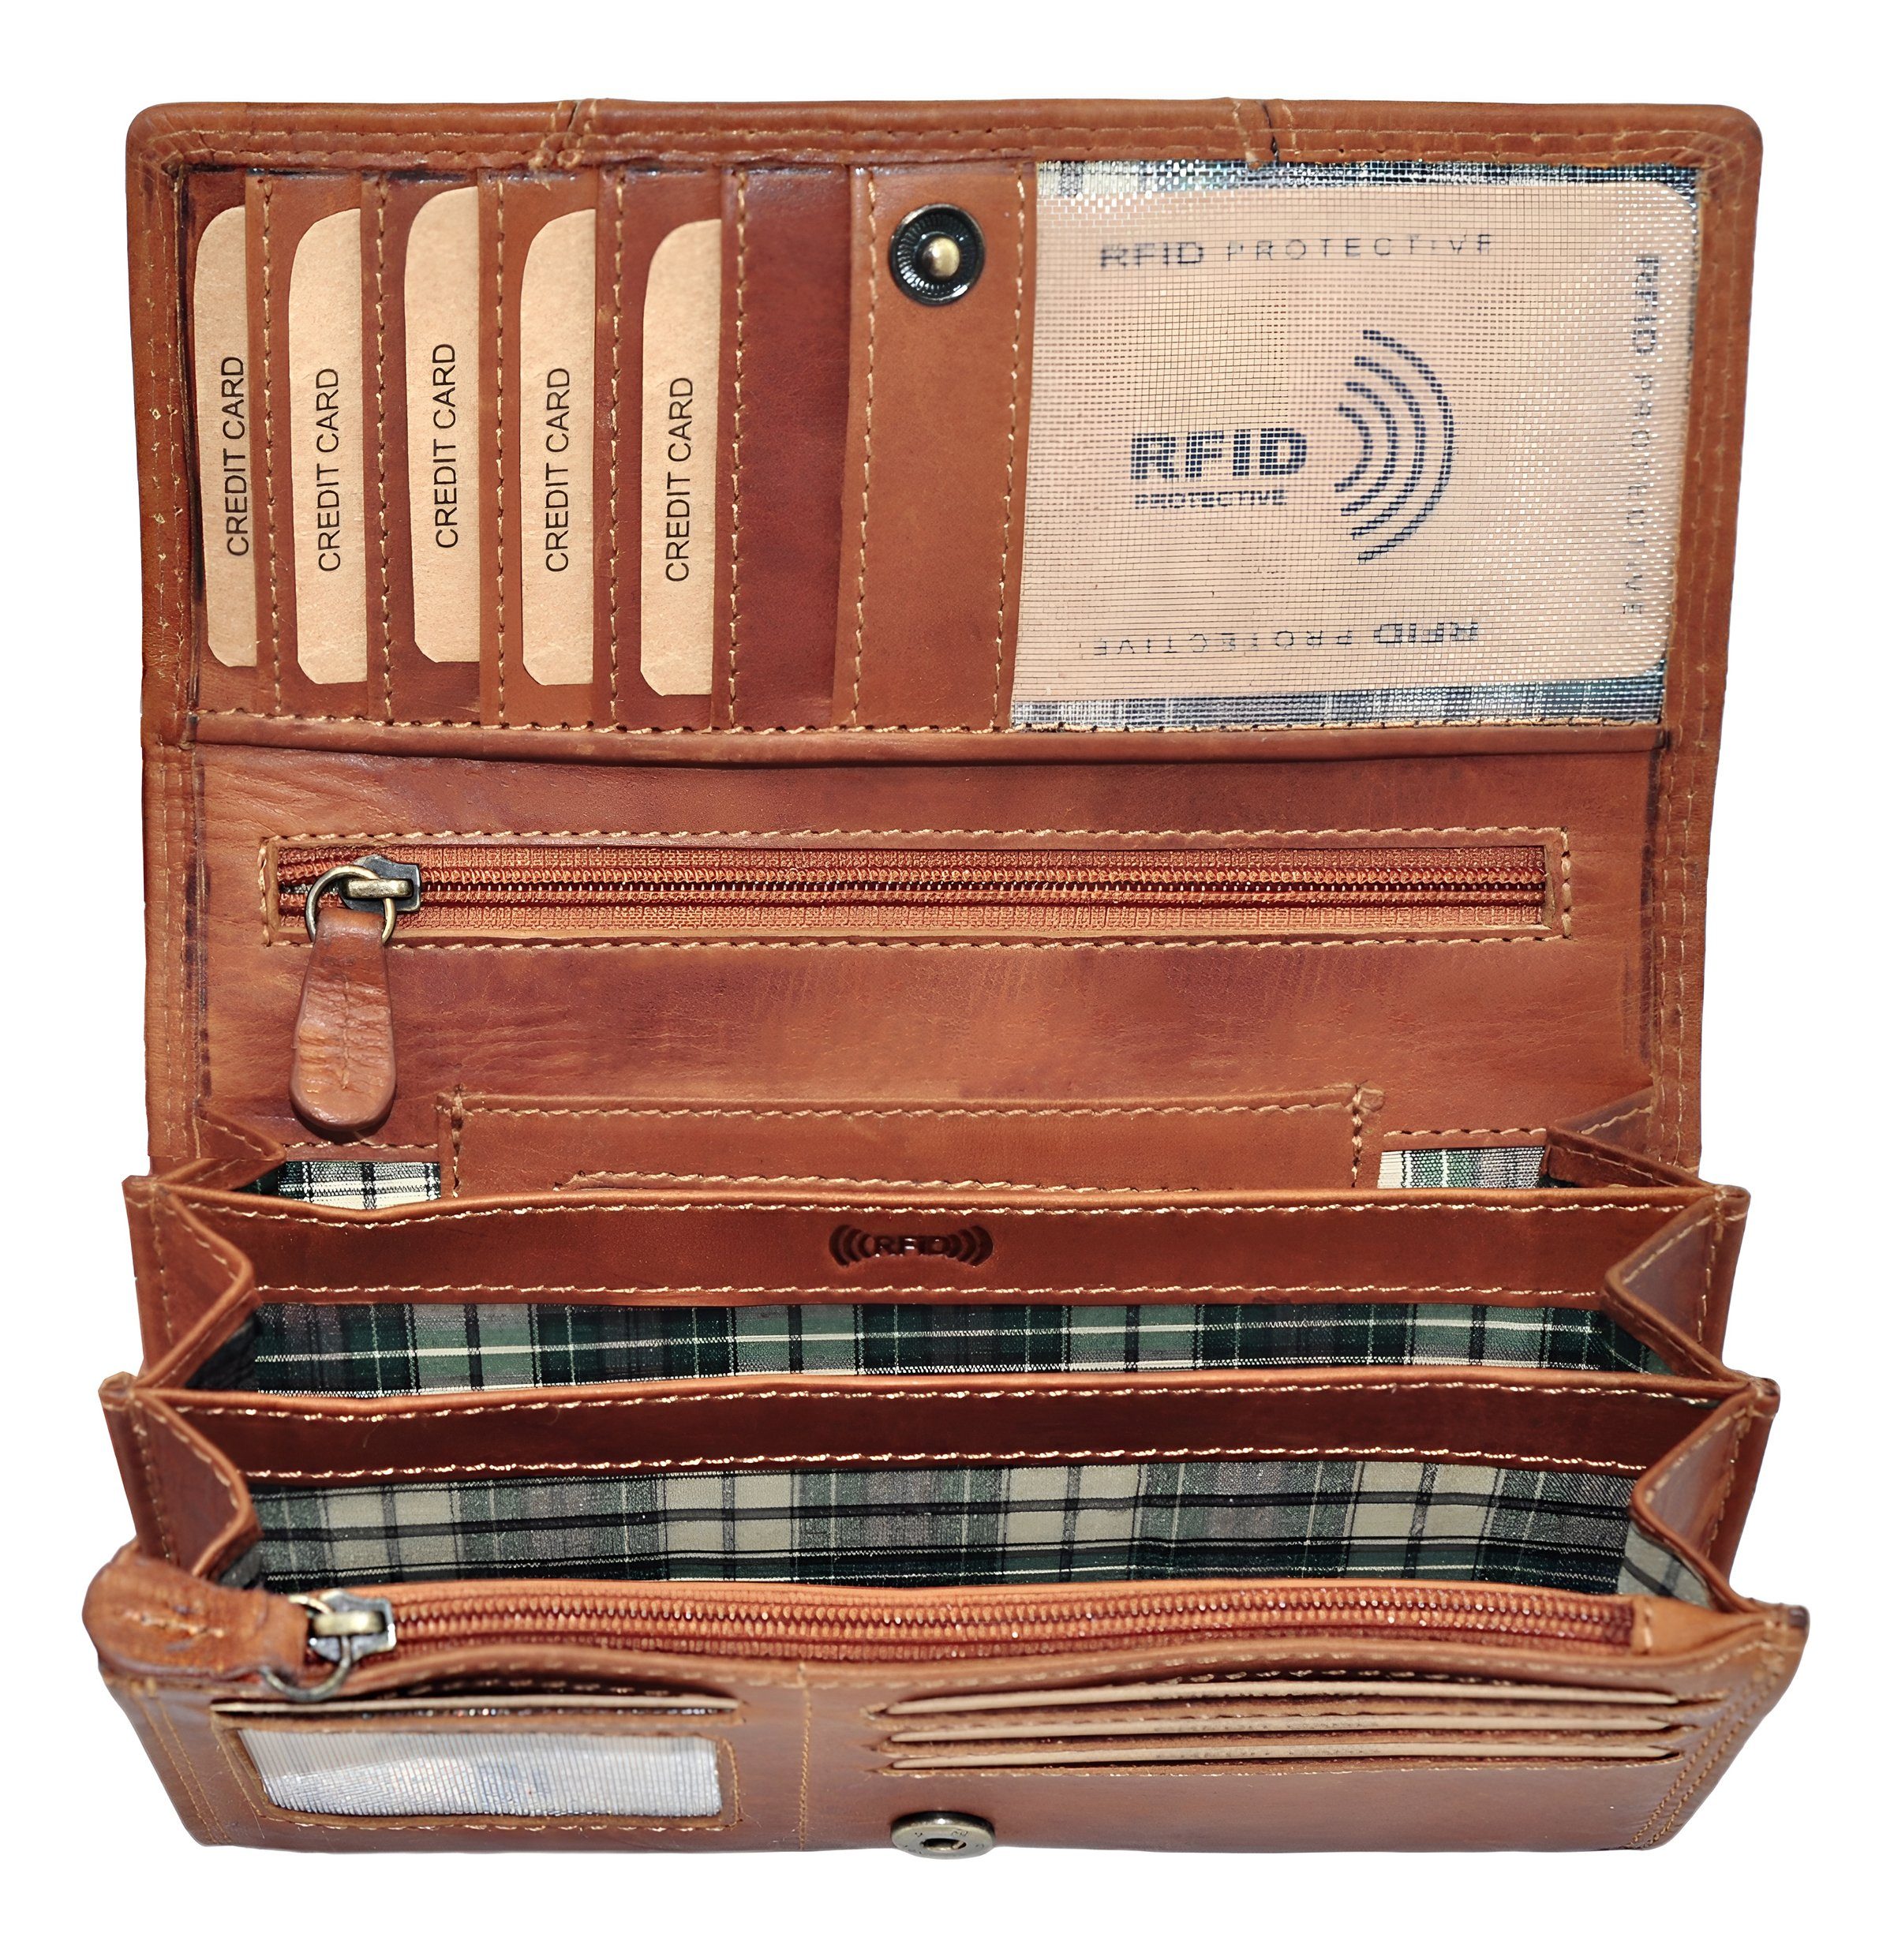 Münzfach Leder Groß, RFID-Schutz Reißverschlussfach Portemonnaie Damen Braun Geldbeutel Geldbörse Echt RFID Kartenfächer Portmonee Benthill Frauen